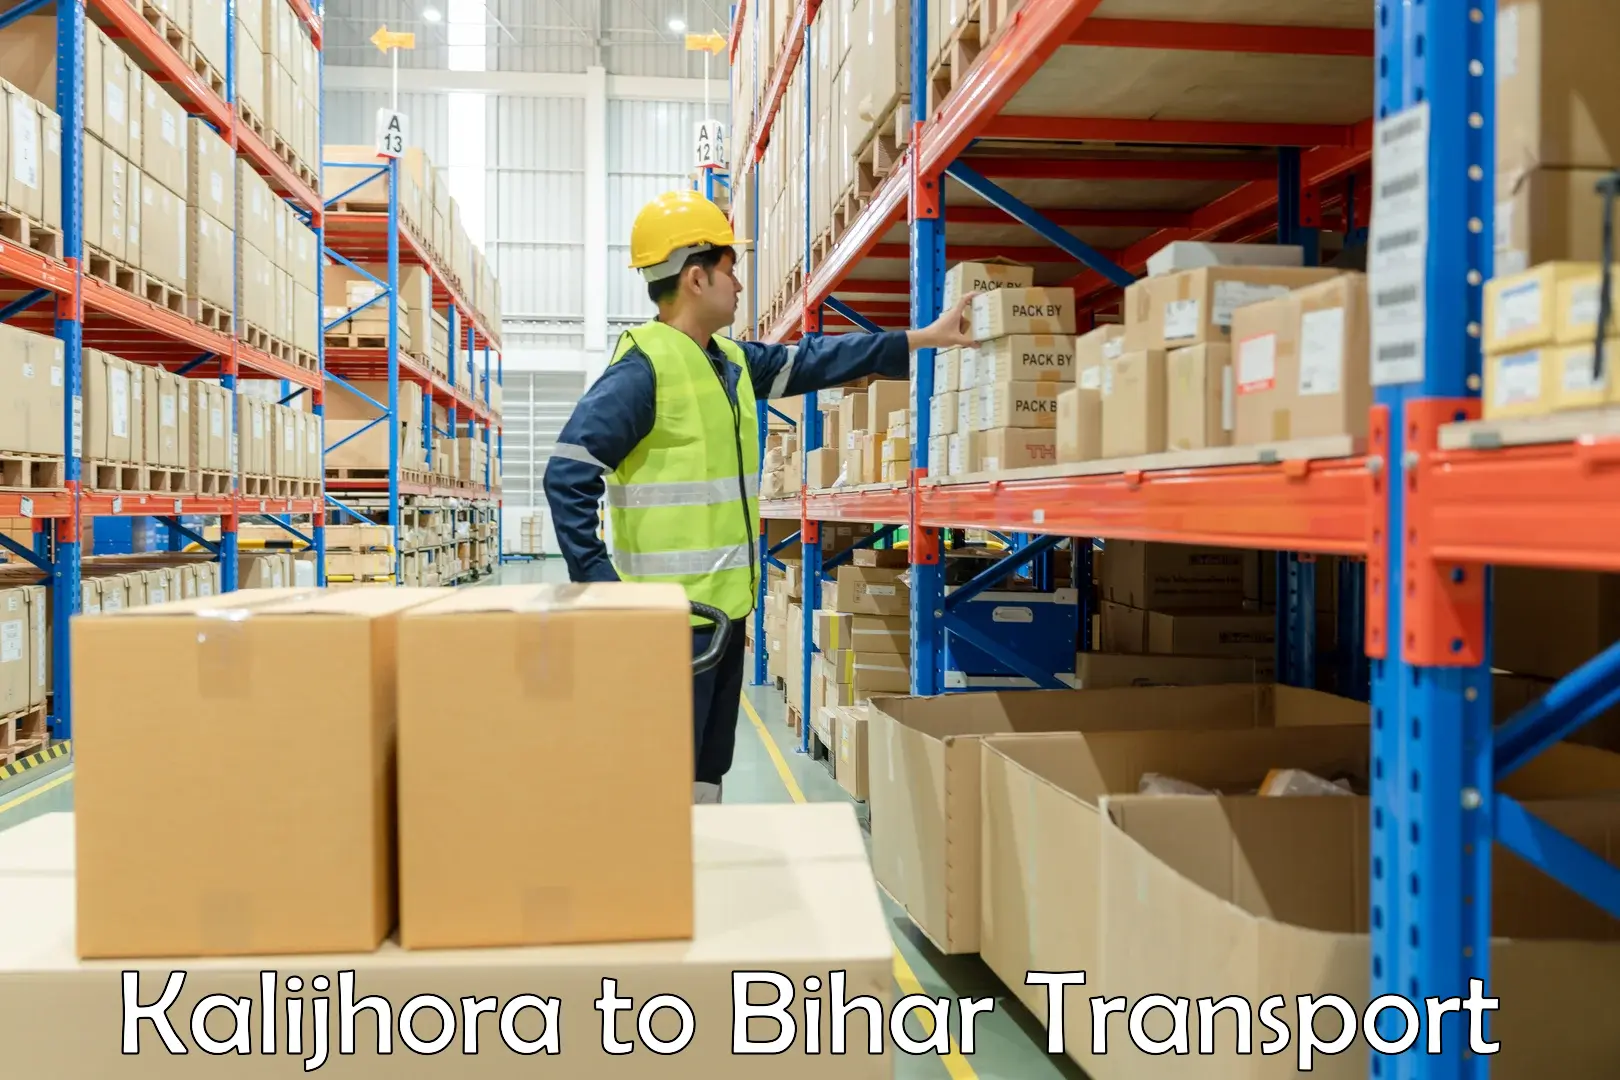 Truck transport companies in India Kalijhora to Bihar